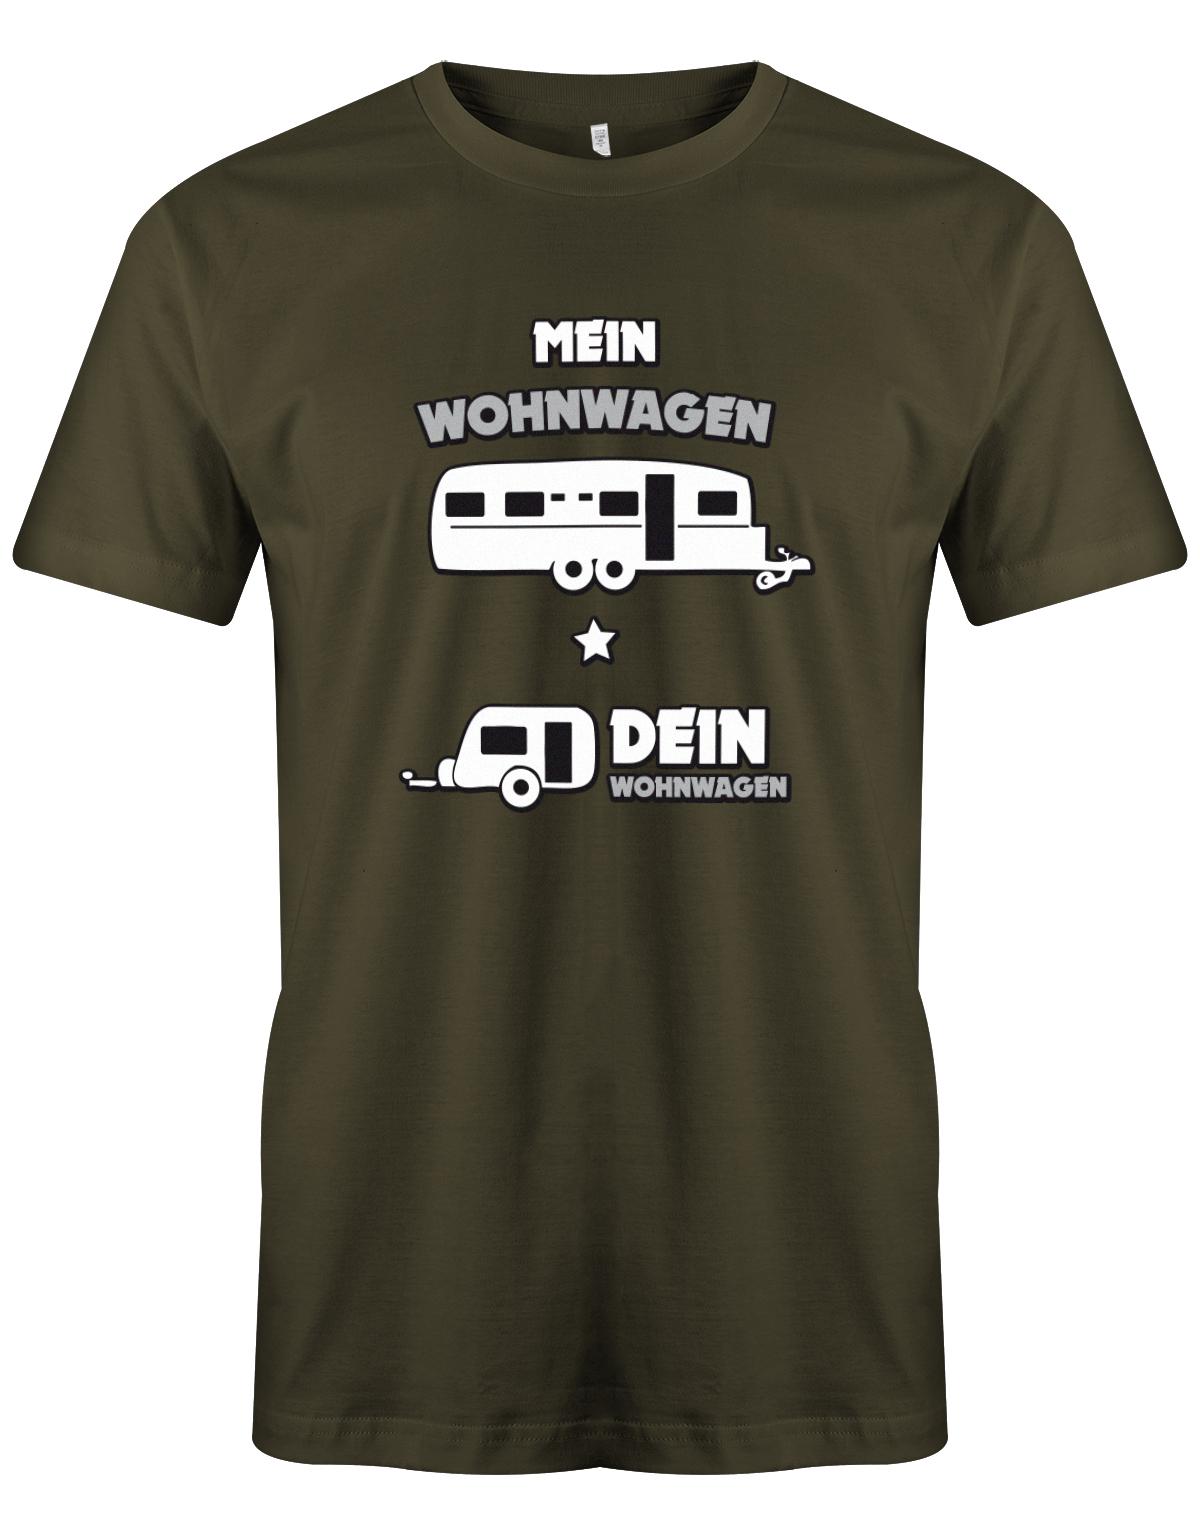 Mein-Wohnwagen-Dein-Wohnwagen-herren-Camper-Shirt-Army